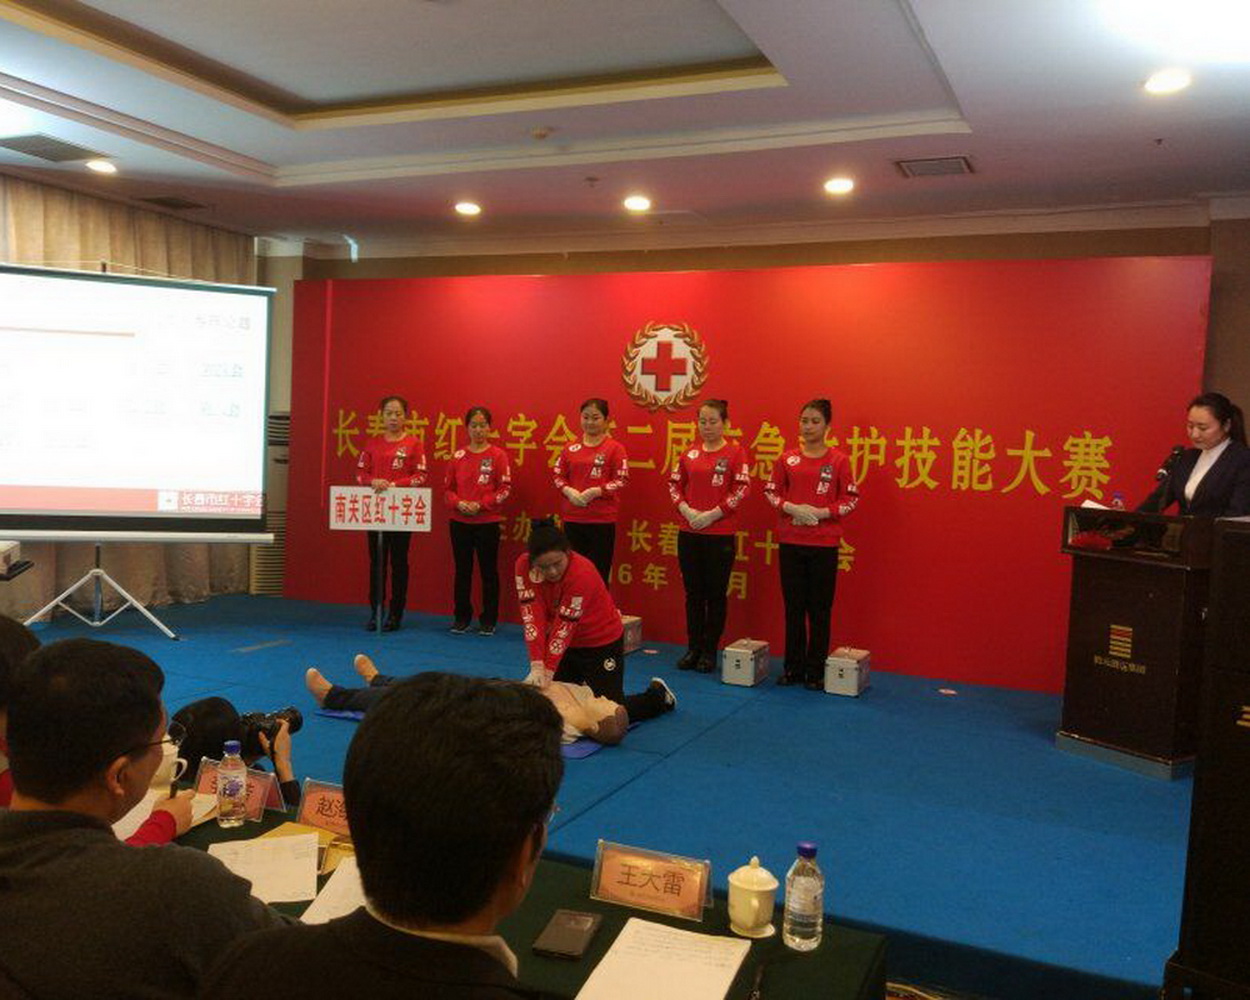 2016年12月,孙莹莹代表南关区参加了长春市红十字会第二届应急救护技能大赛,荣获团体三等奖